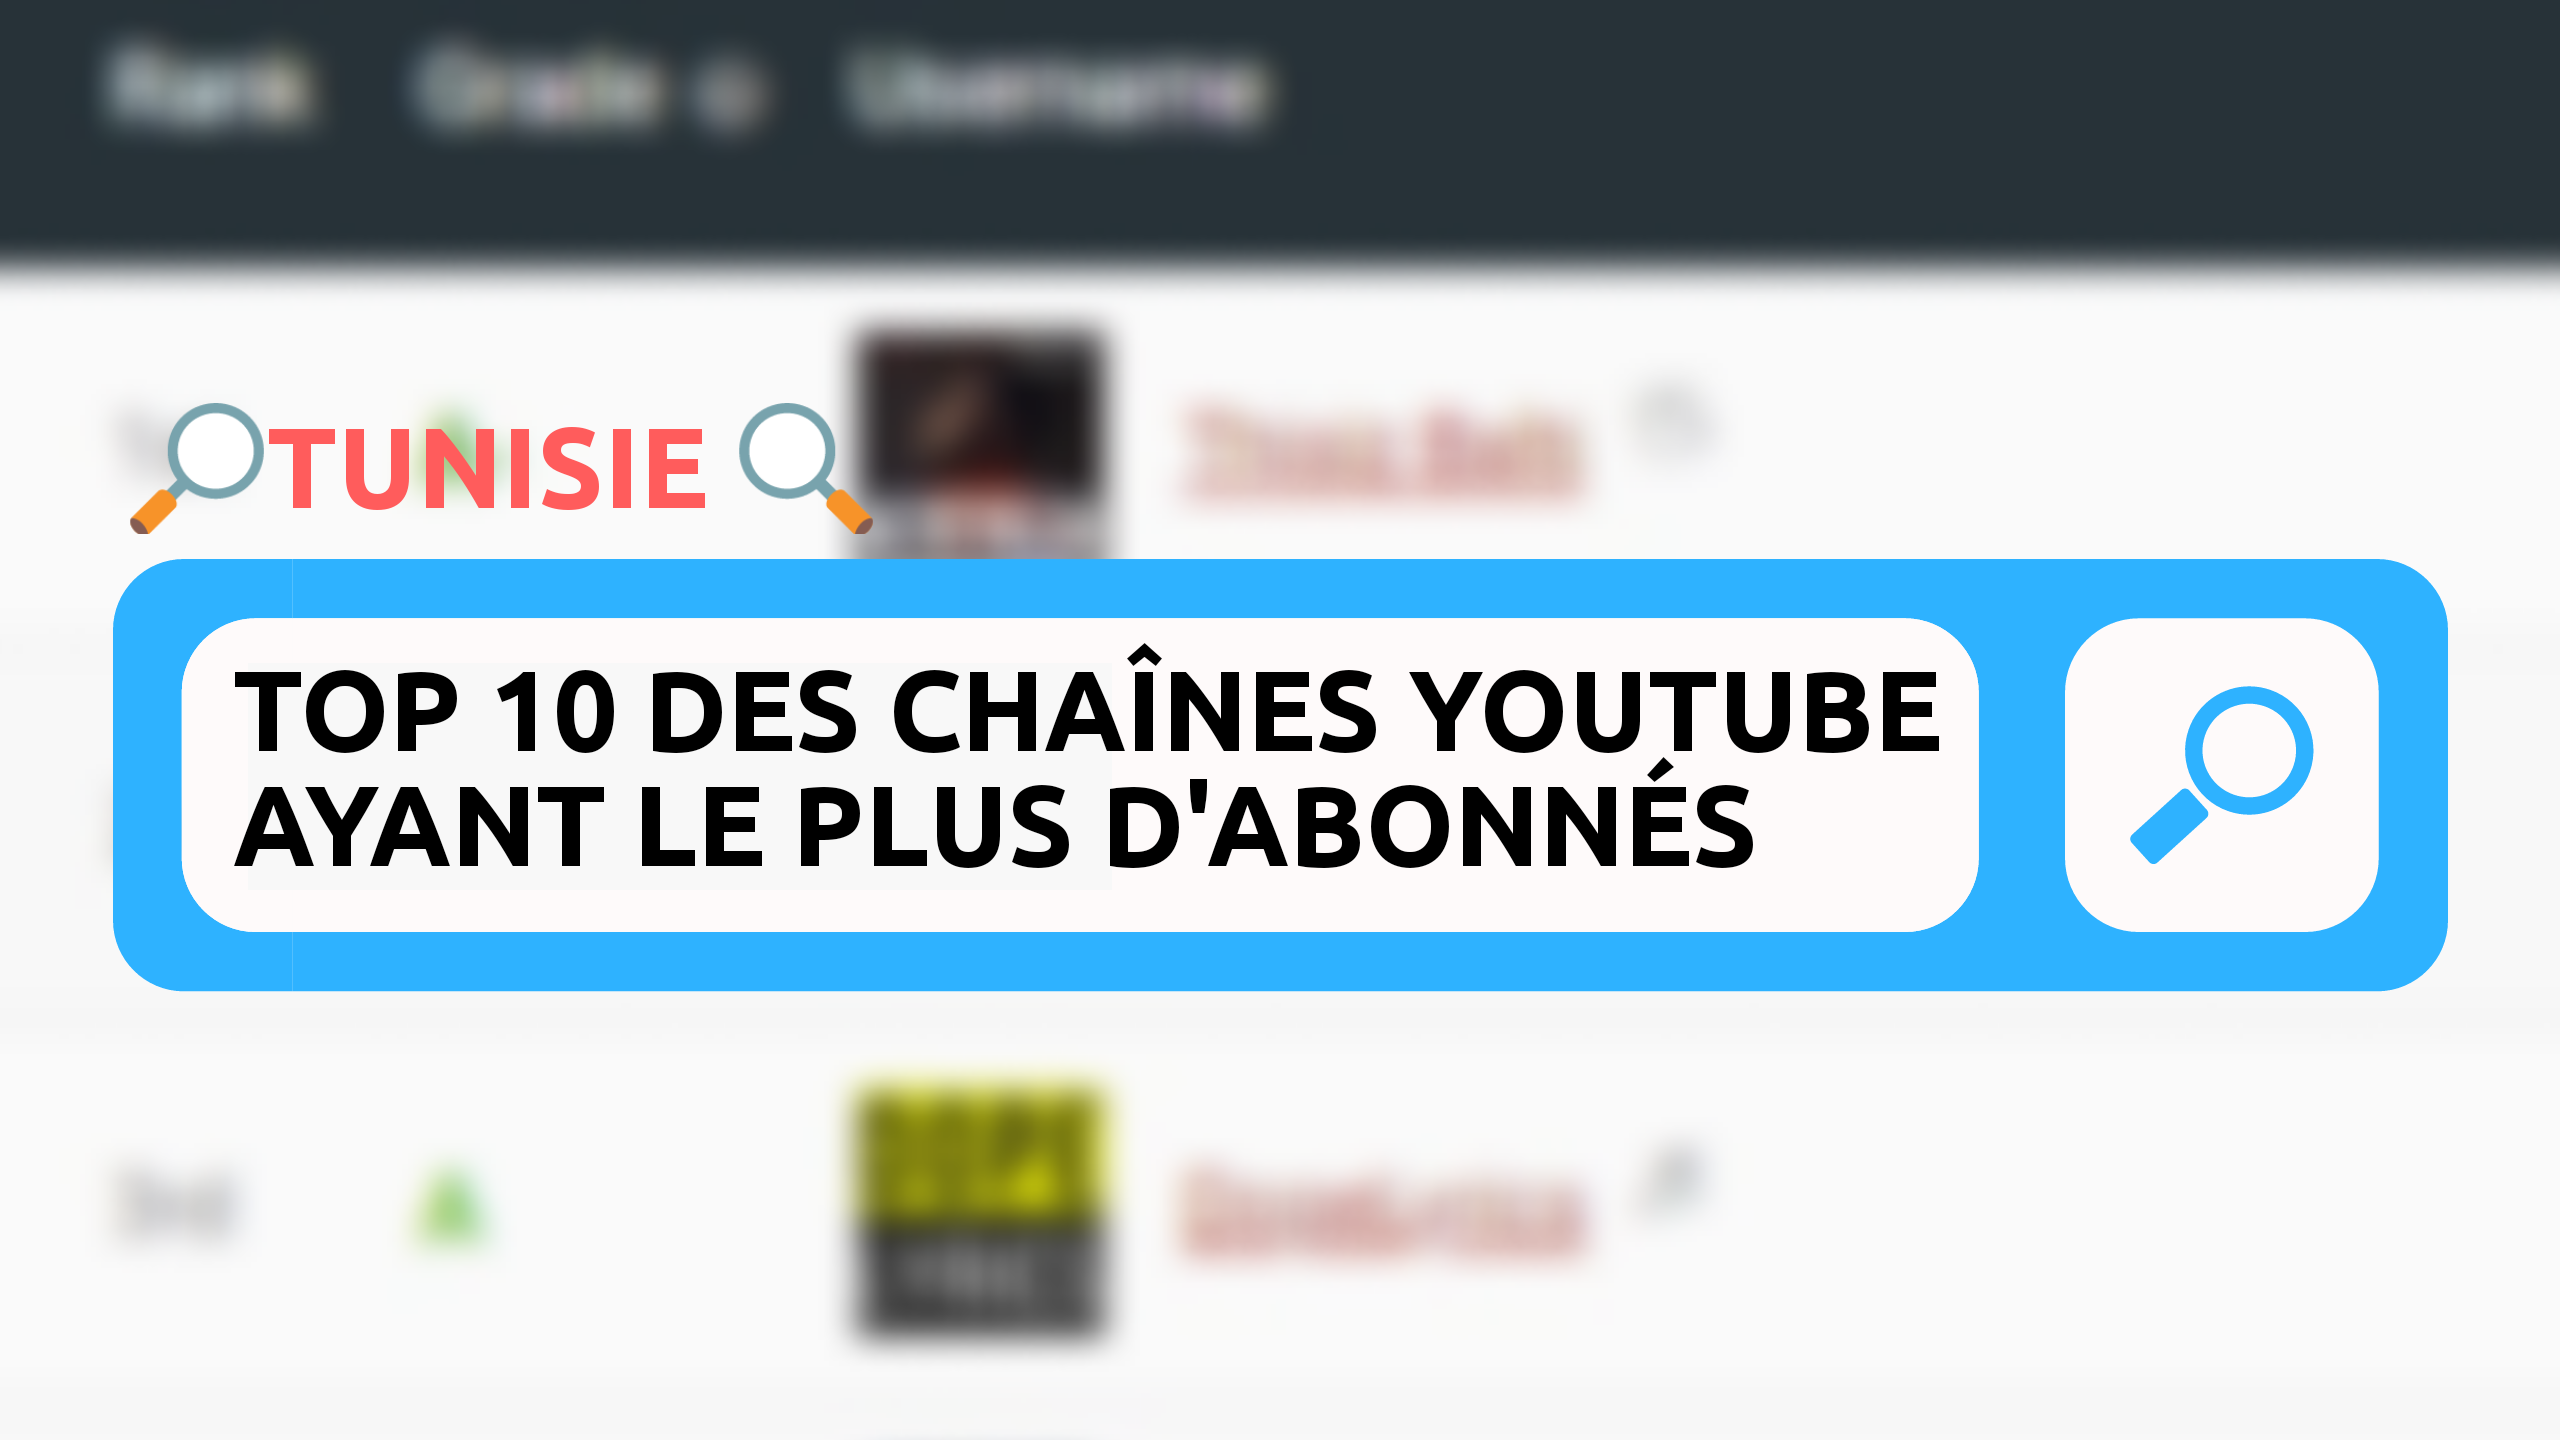 20180314 090328 0001 Tunisie : Top 10 des chaînes YouTube ayant le plus d'abonnés